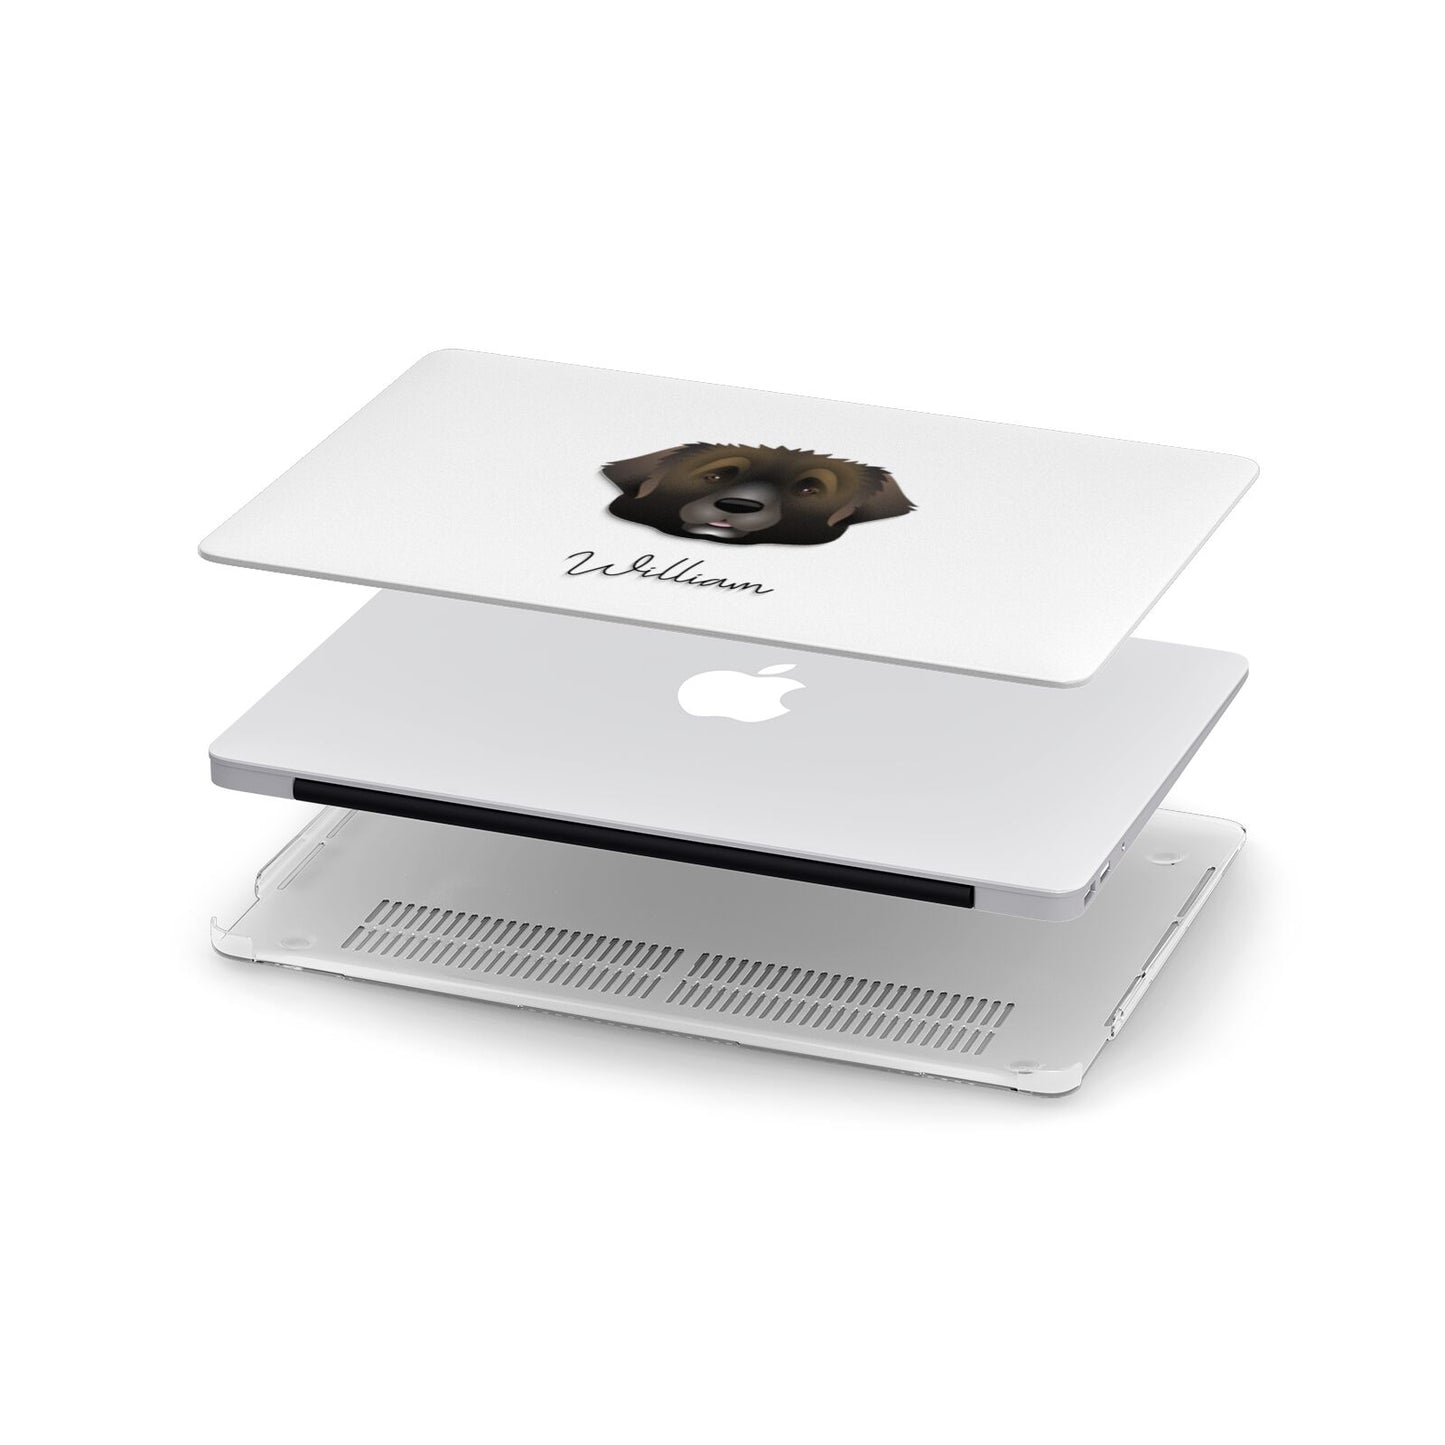 Leonberger Personalised Apple MacBook Case in Detail